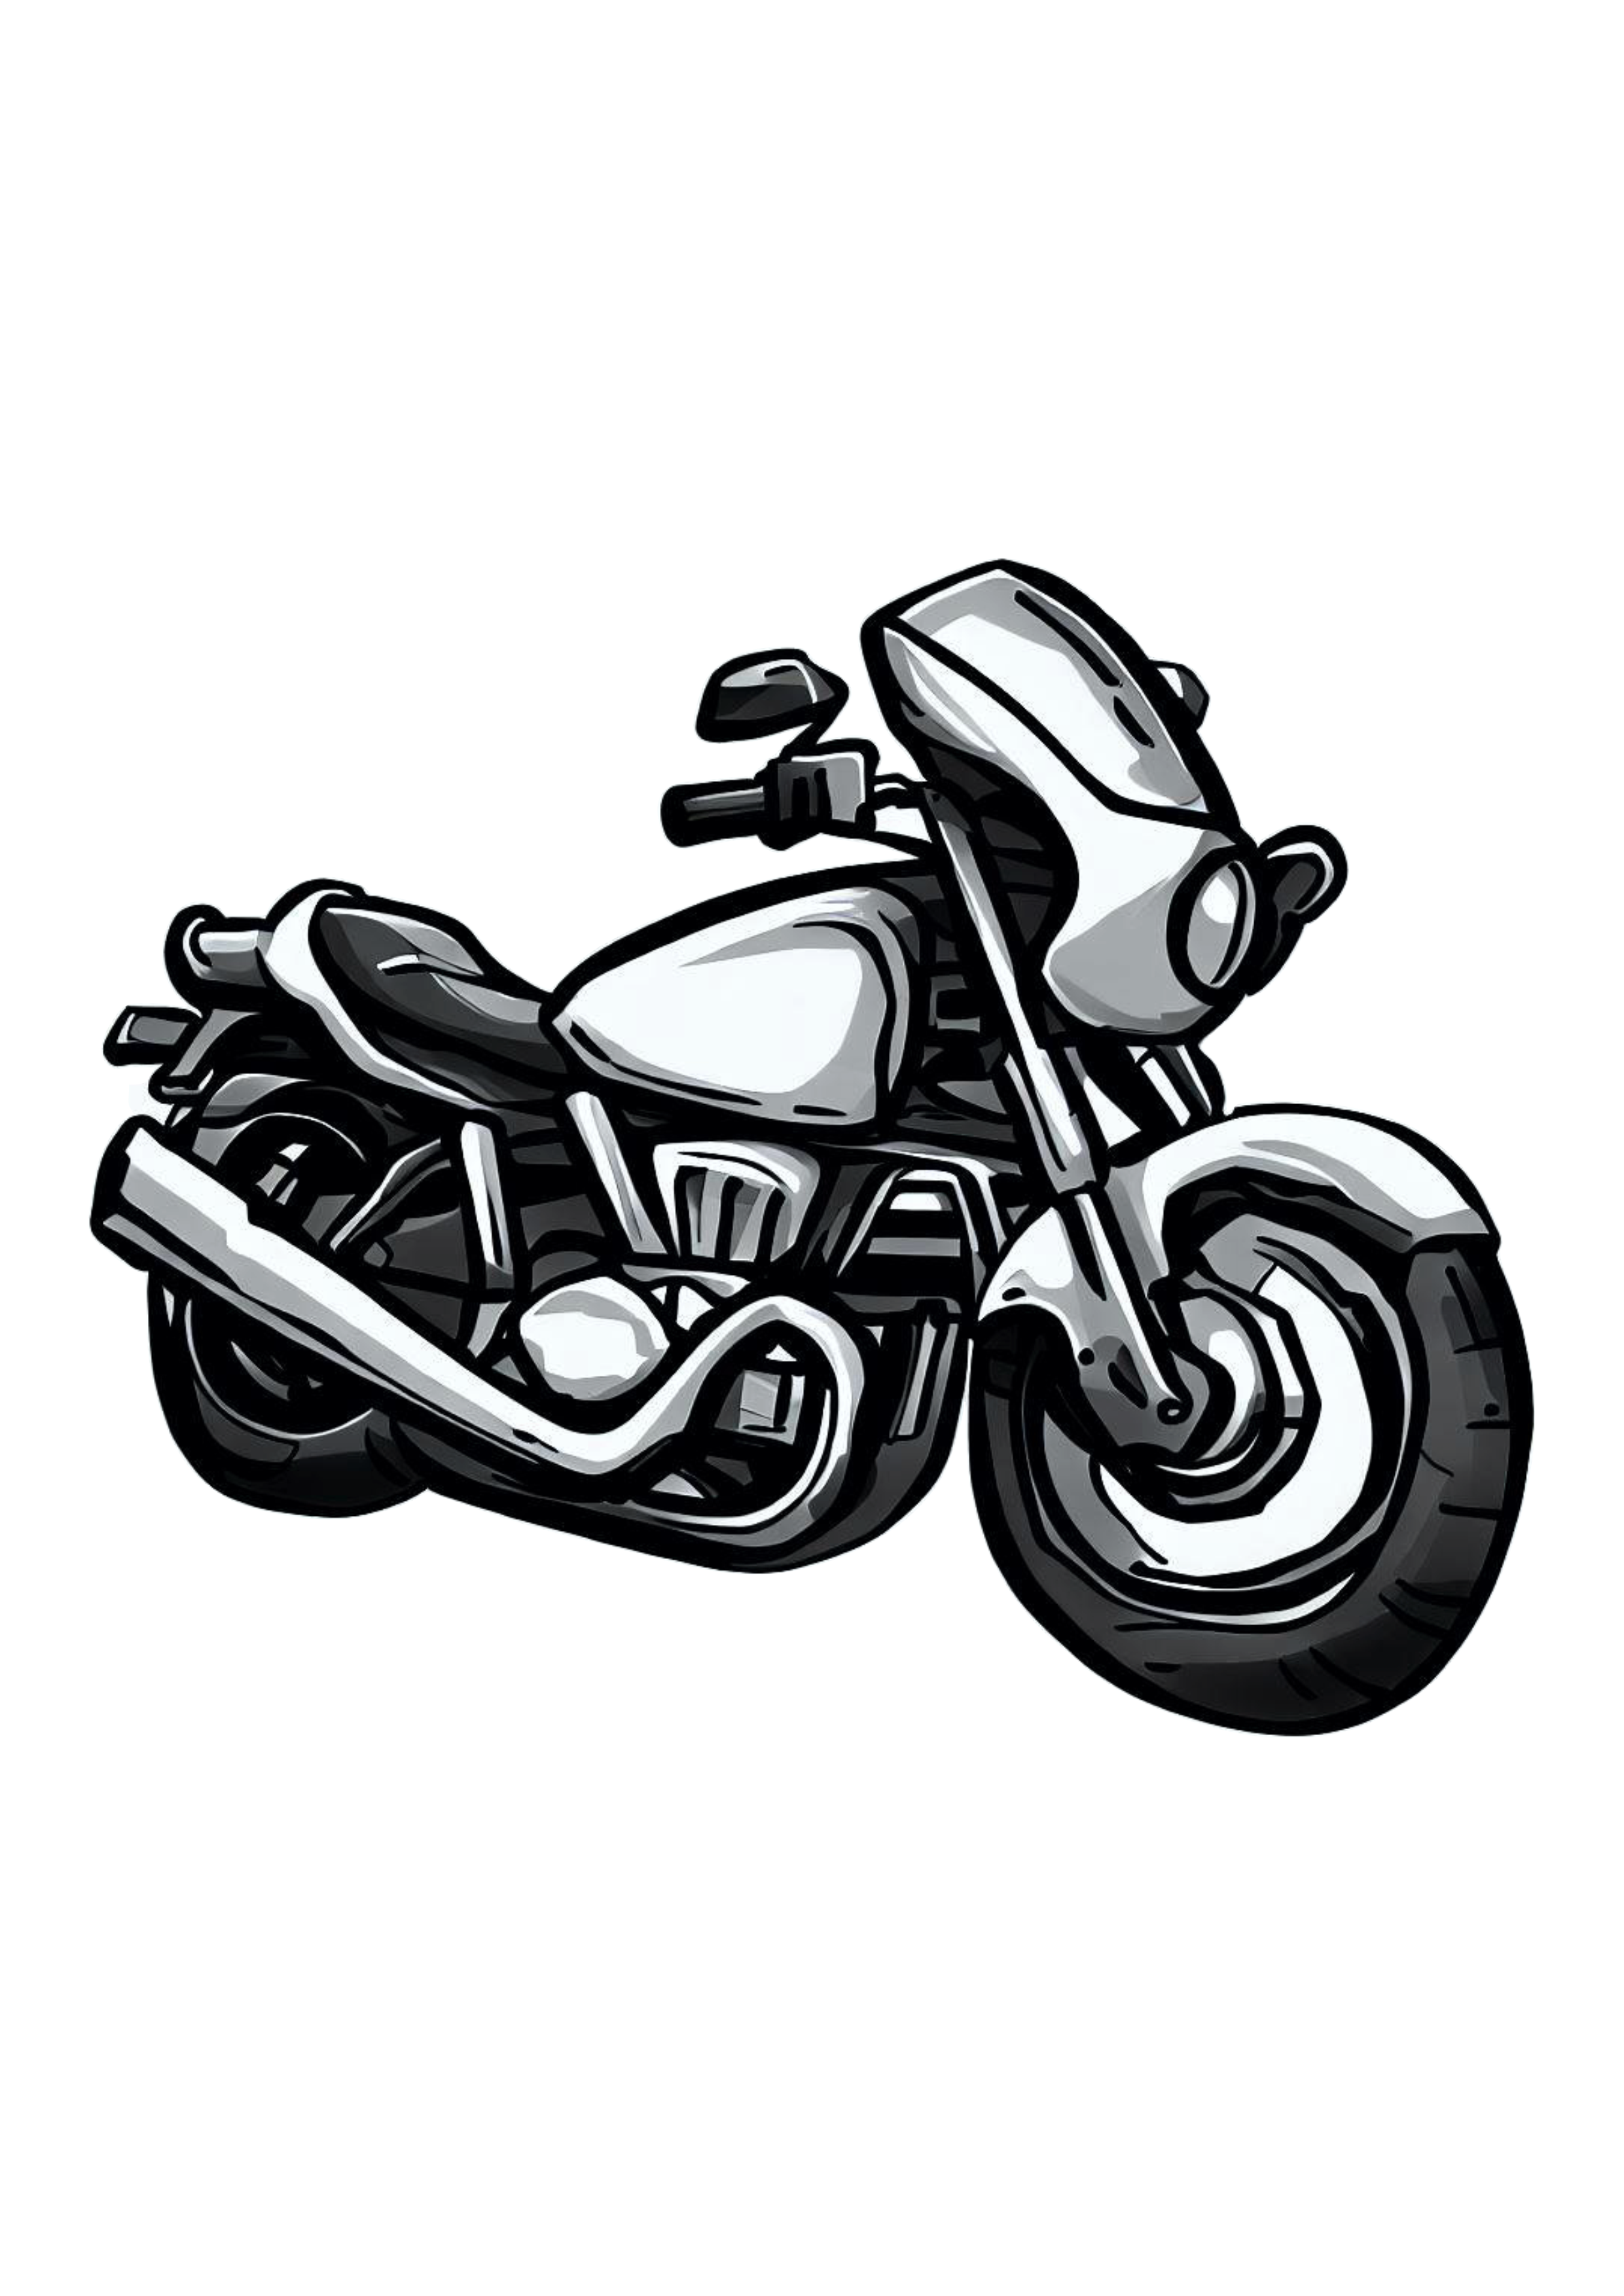 Moto esportiva desenho cartoon imagem conceitual veículo automotivo alta velocidade alta velocidade png